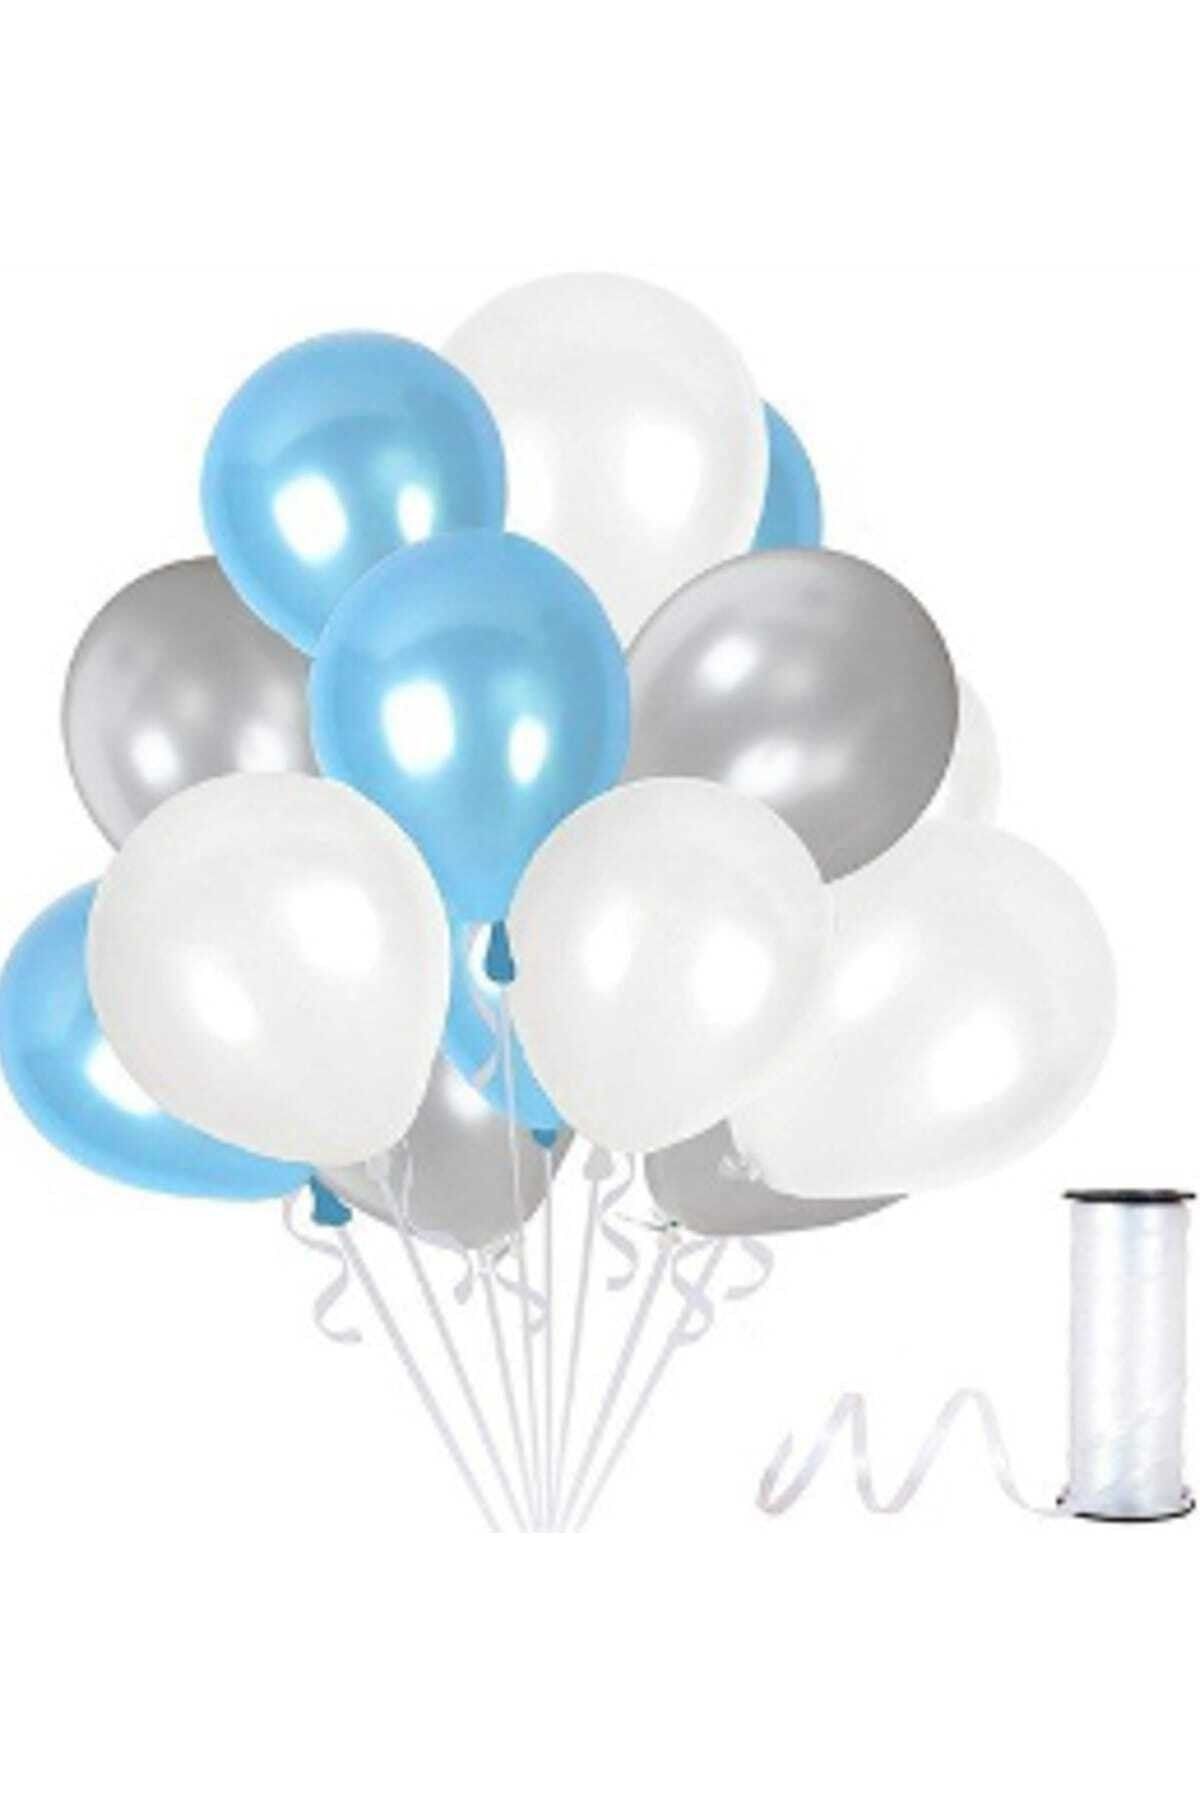 Magic Hobby 50 Adet Gümüş - Beyaz- Mavi Metalik Balon 3'lü Renk - 12 Inç